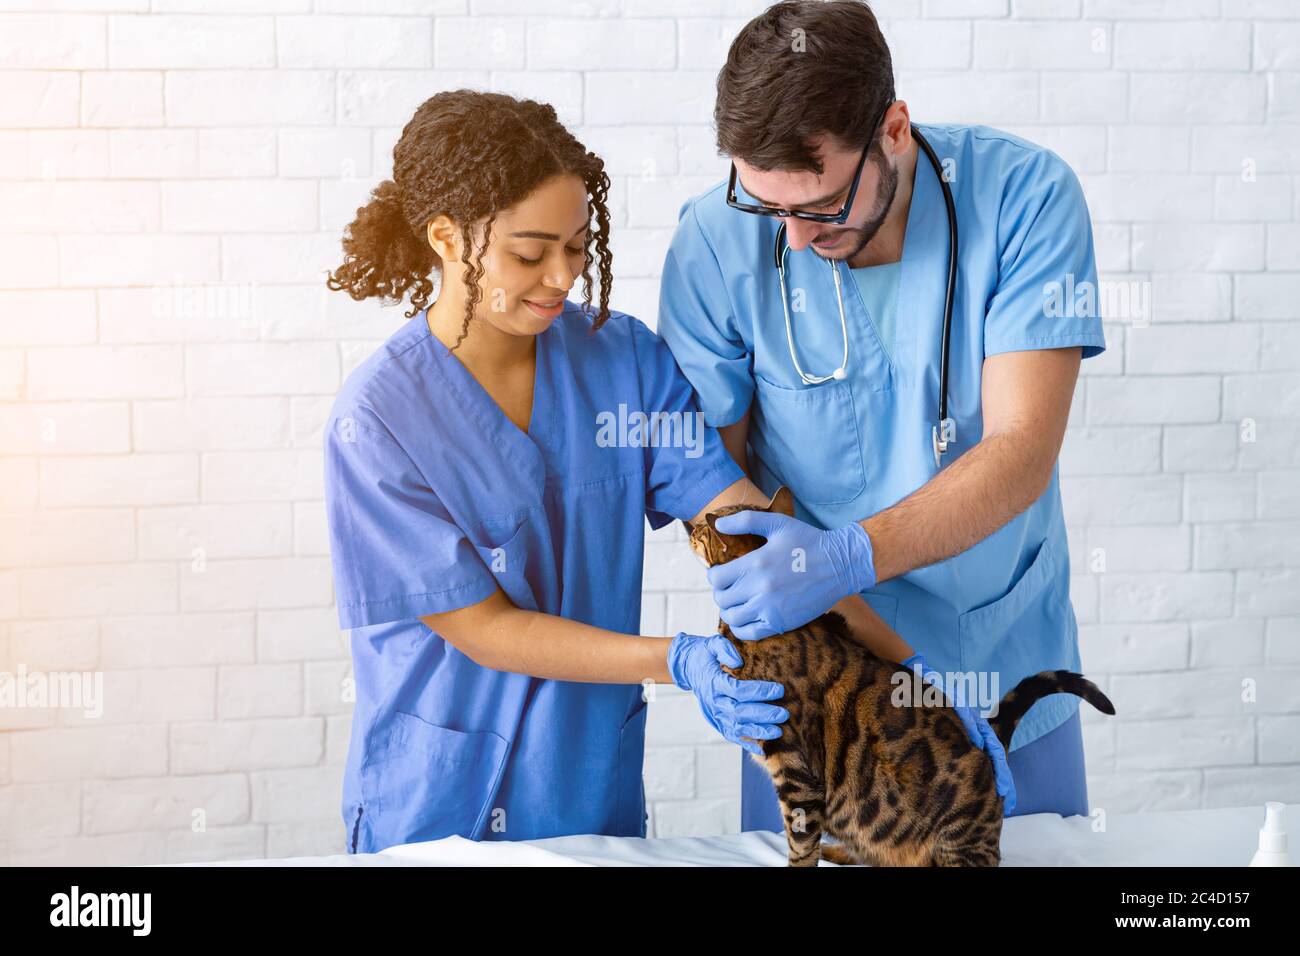 Medico animale con infermiere che dà il controllo al gatto tabby alla clinica Foto Stock